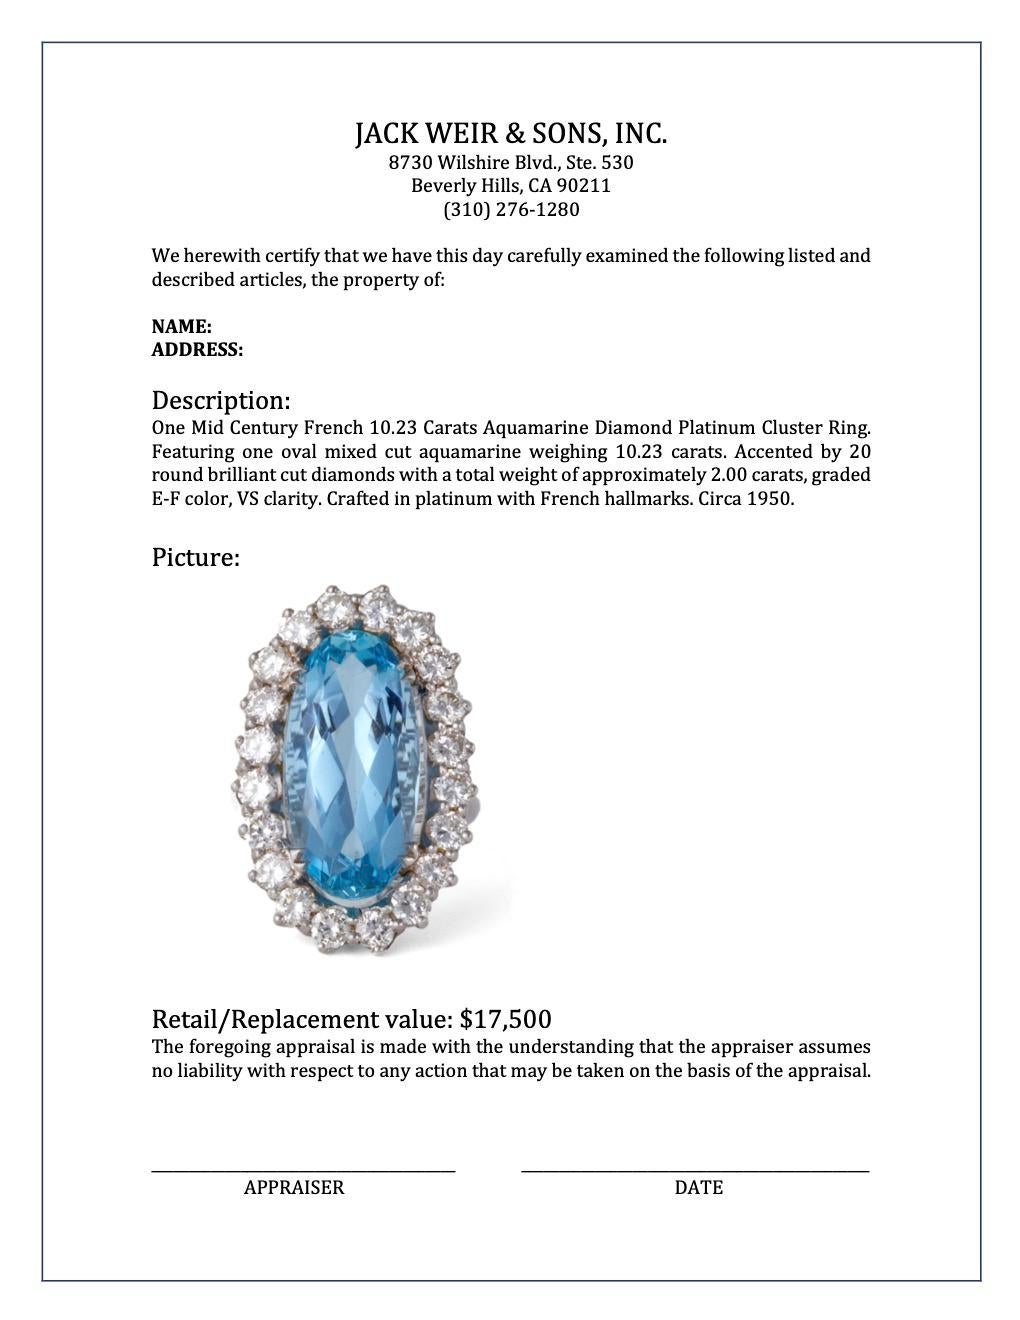 Midcentury French 10.23 Carats Aquamarine Diamond Platinum Cluster Ring 2